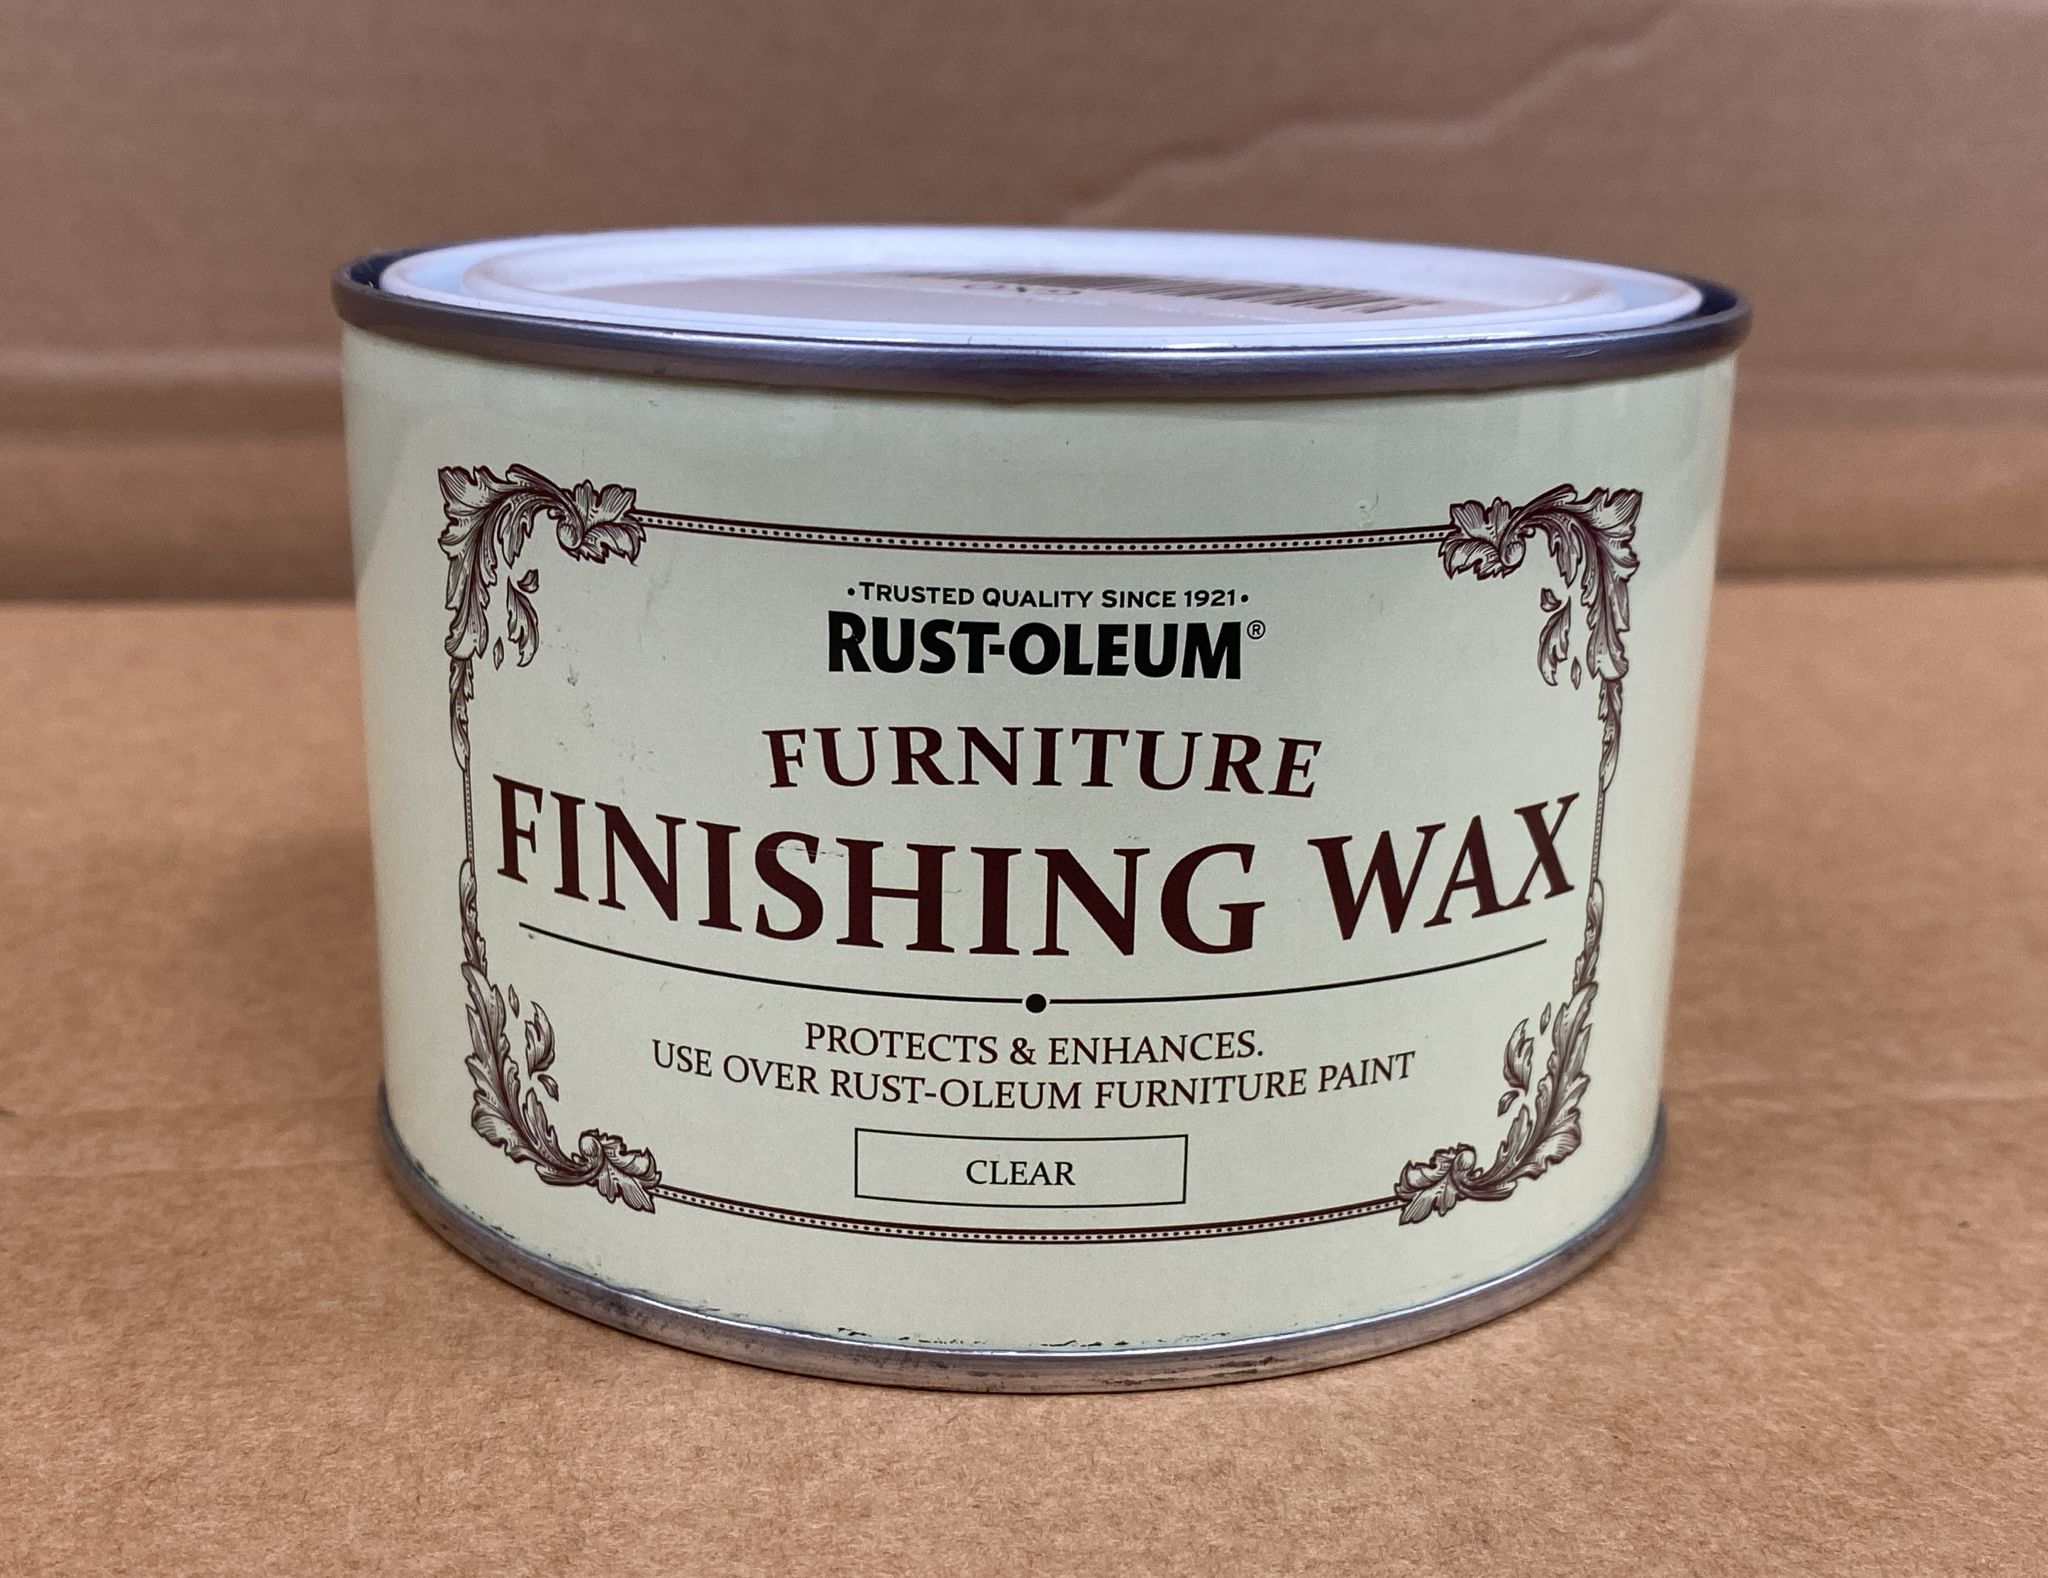 Rust-Oleum Furniture Wax Finishing wax, 0.4L-1349